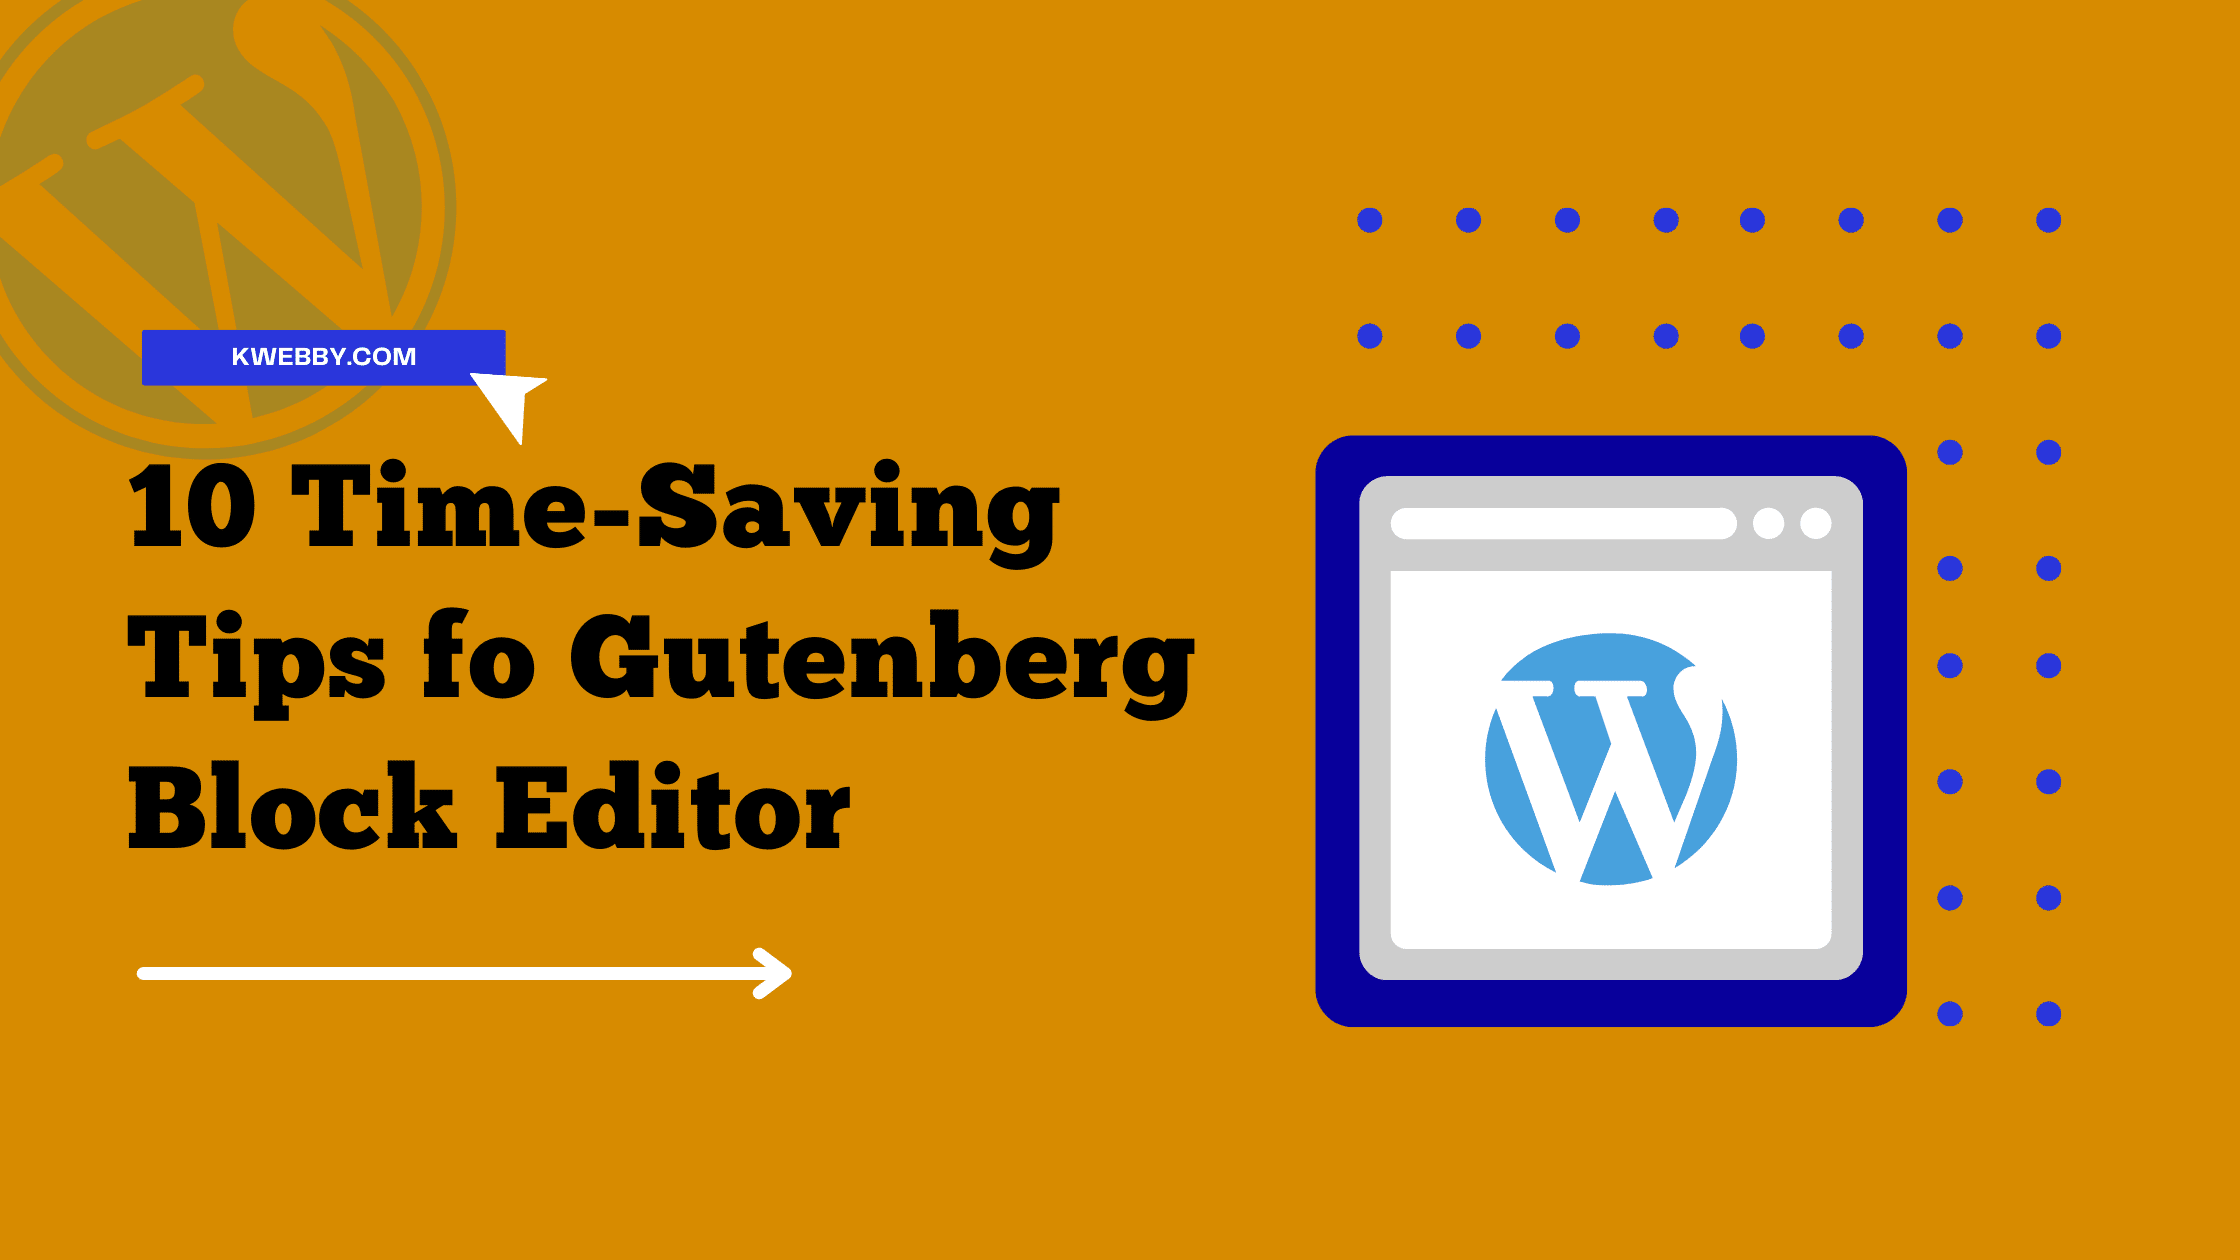 10 Time-Saving Tips for WordPress Gutenberg Block Editor Users